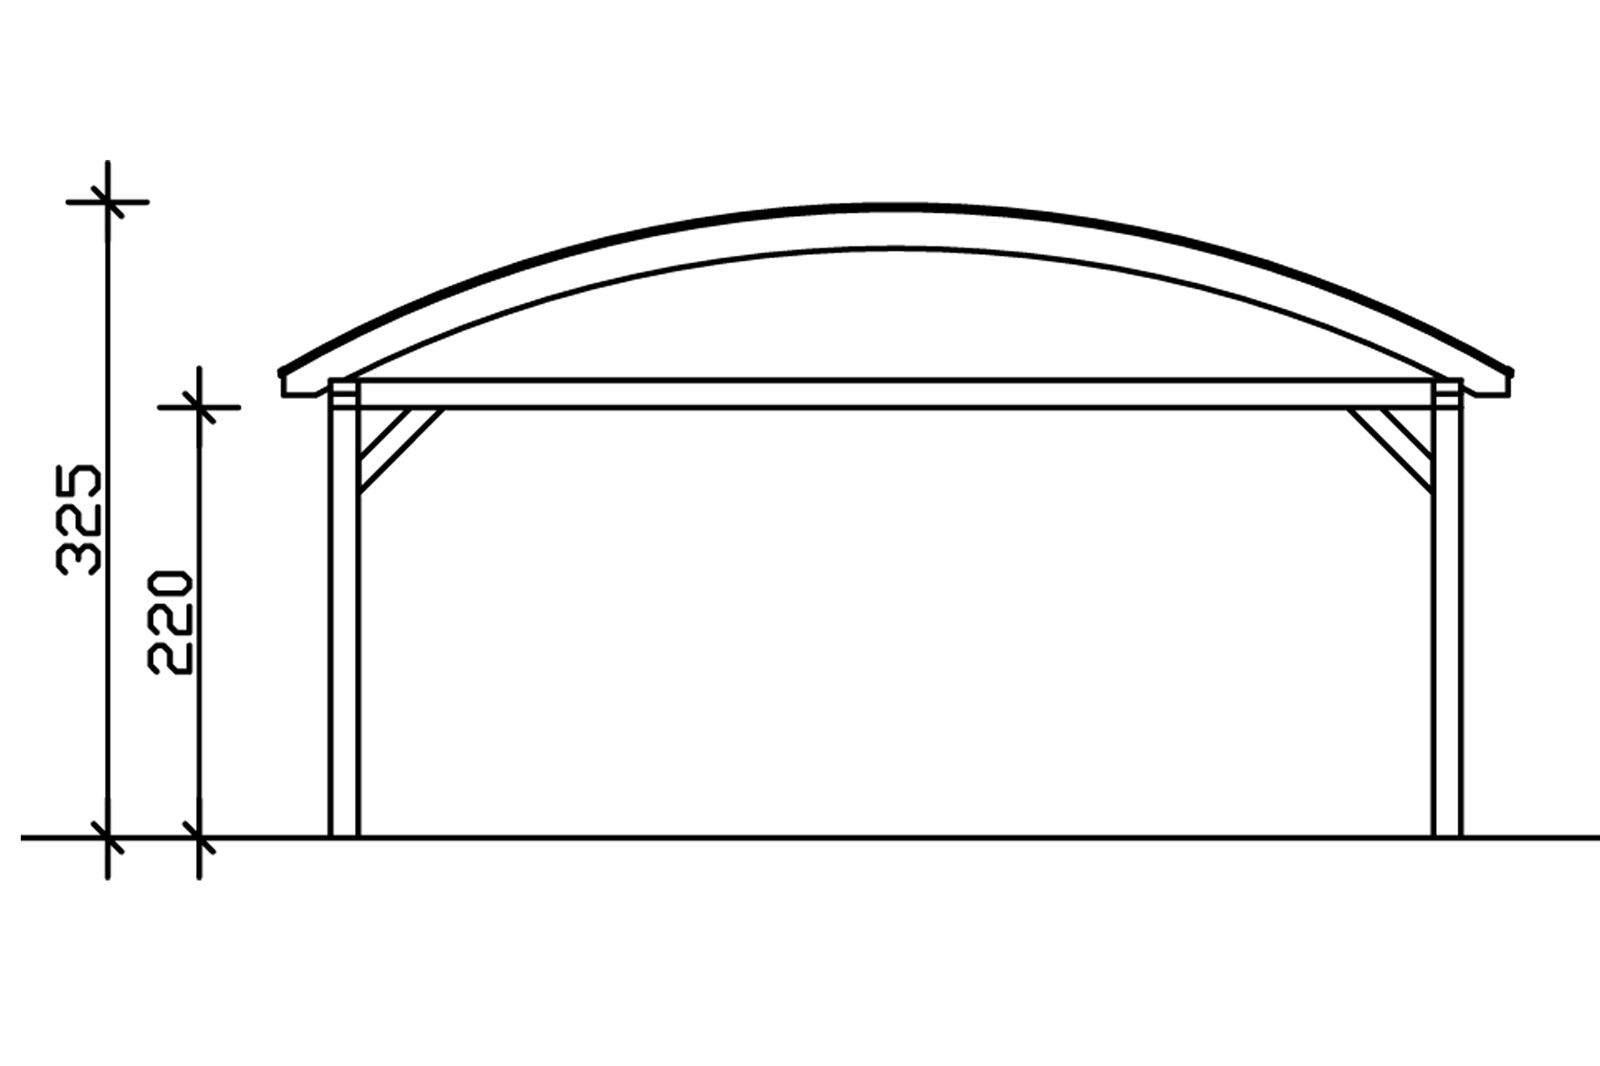 Bogendach-Carport Franken 635 x 969 cm, weiß